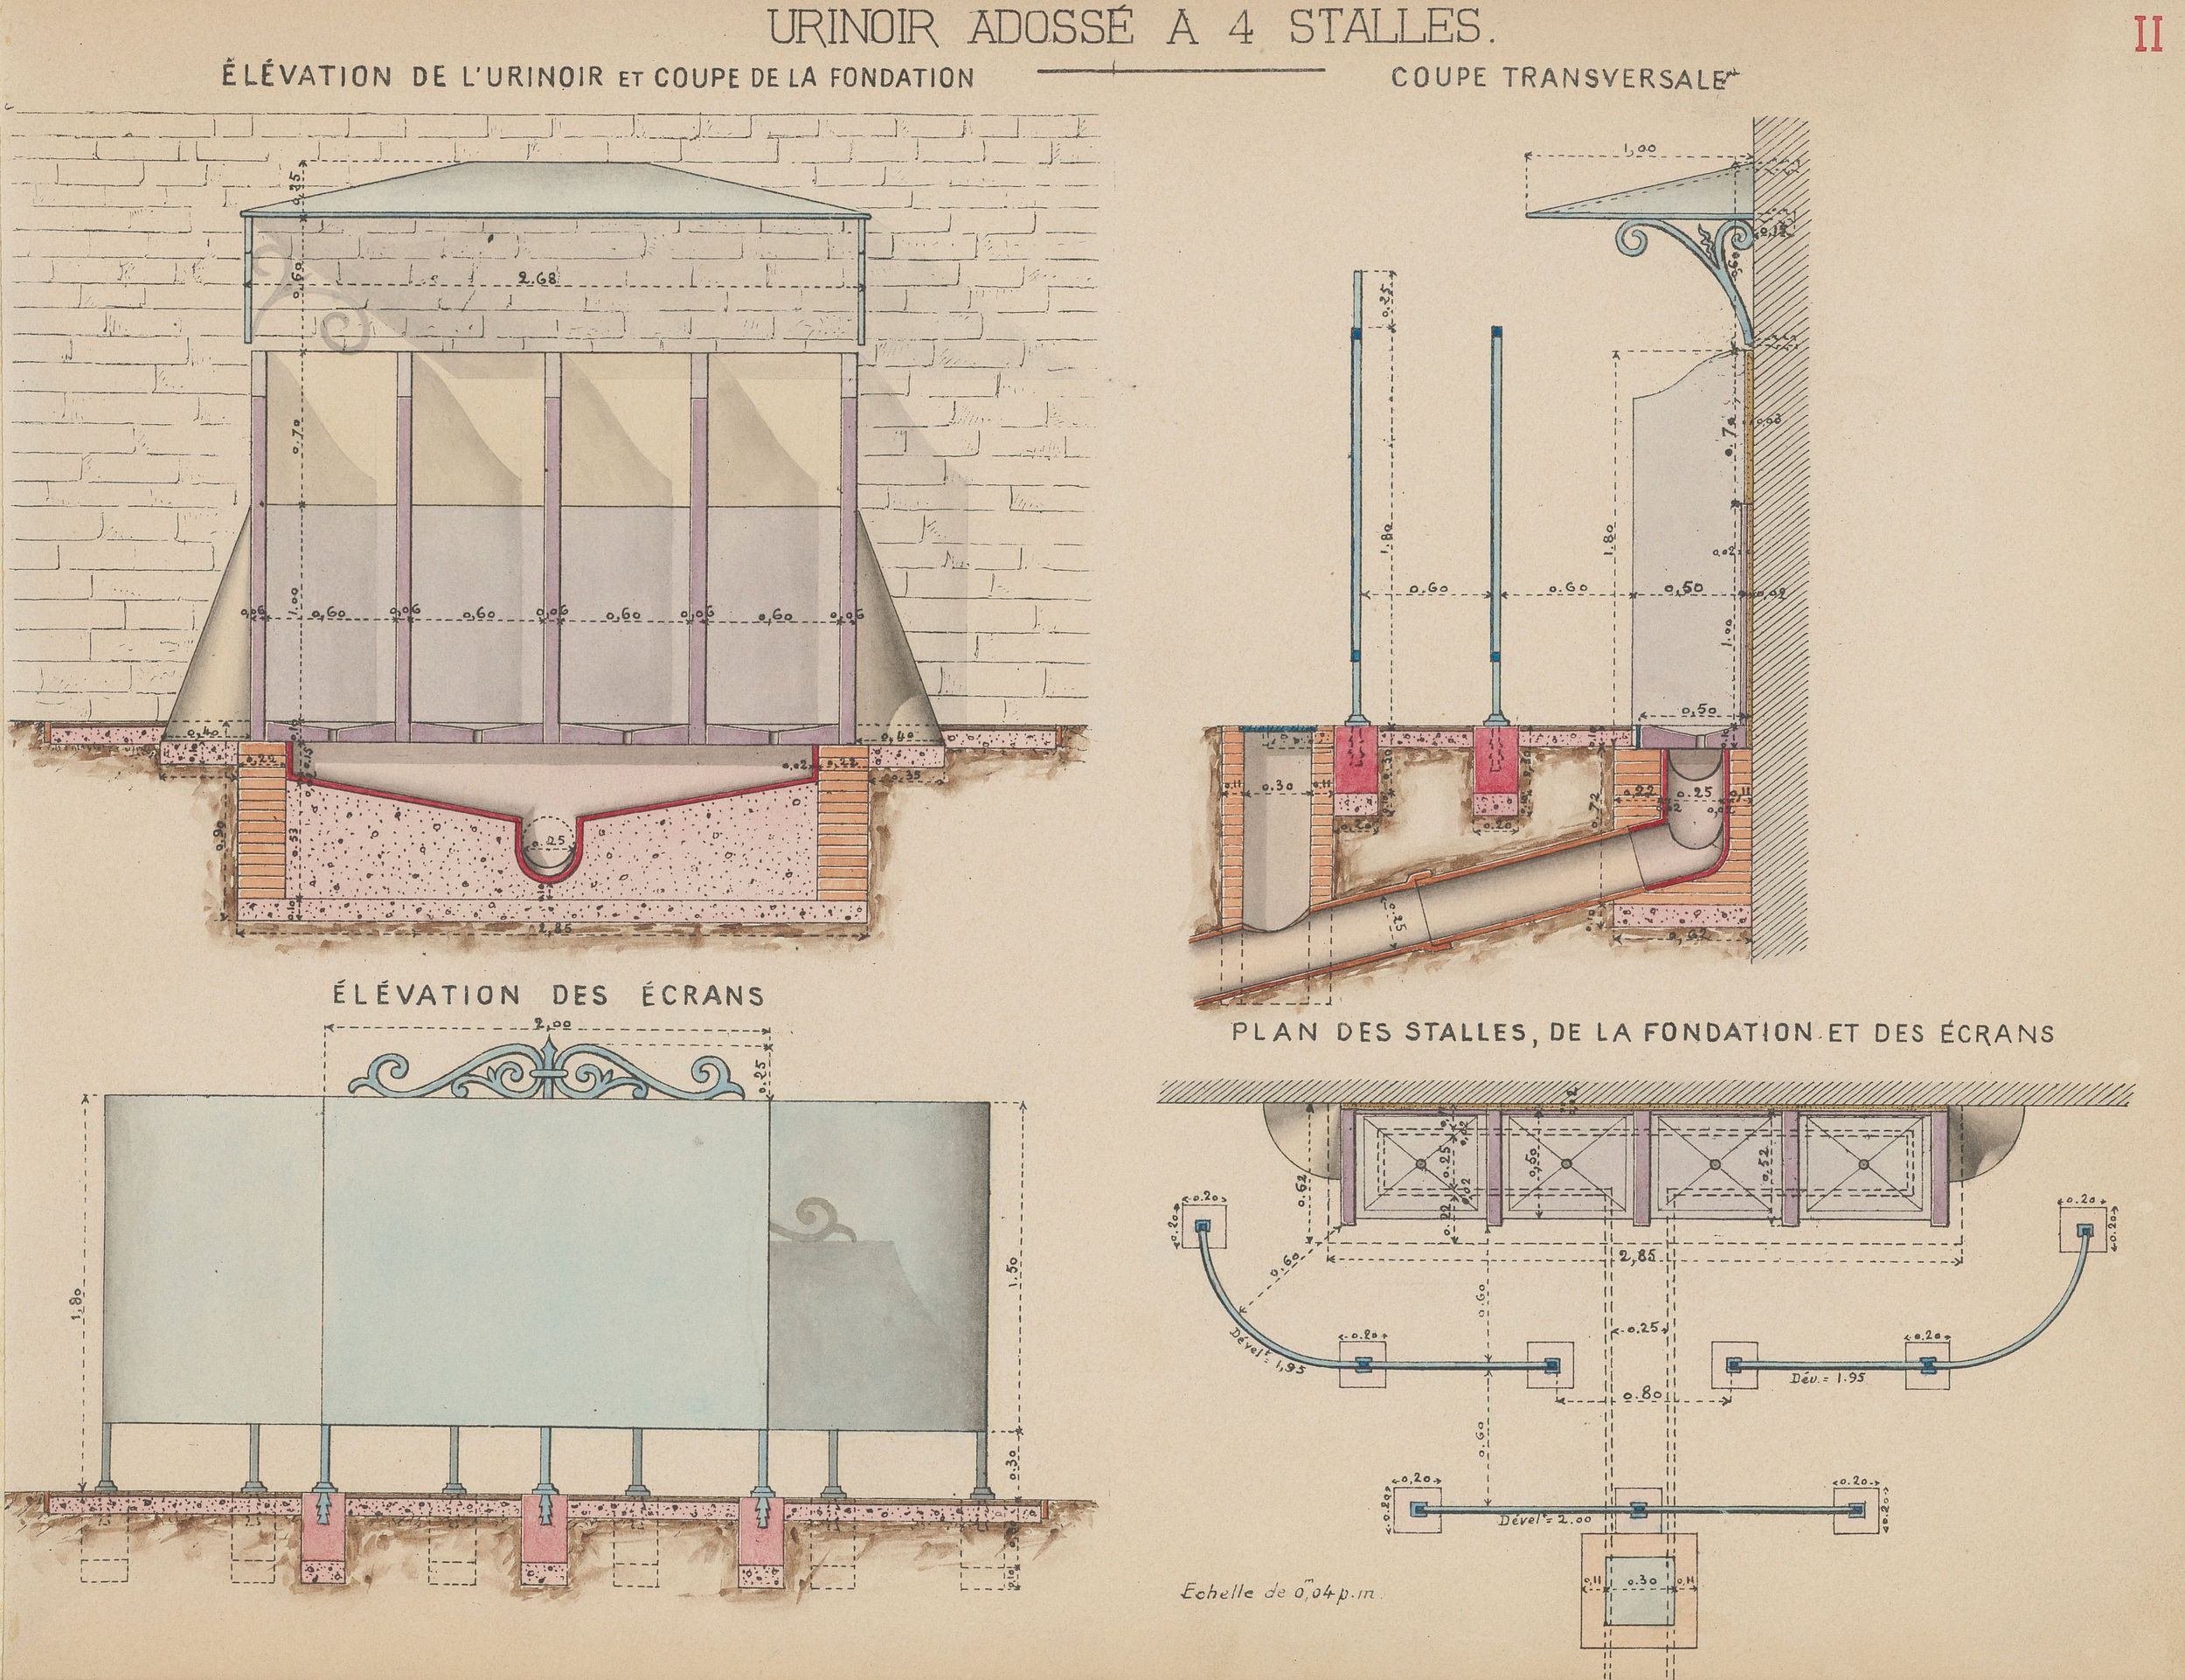 Urinoir adossé à quatre stalles (plan) : dessins manuscrits couleur sur papier cartonné par le Service municipal de la voirie (1914-1915, 3SAT/24/7)